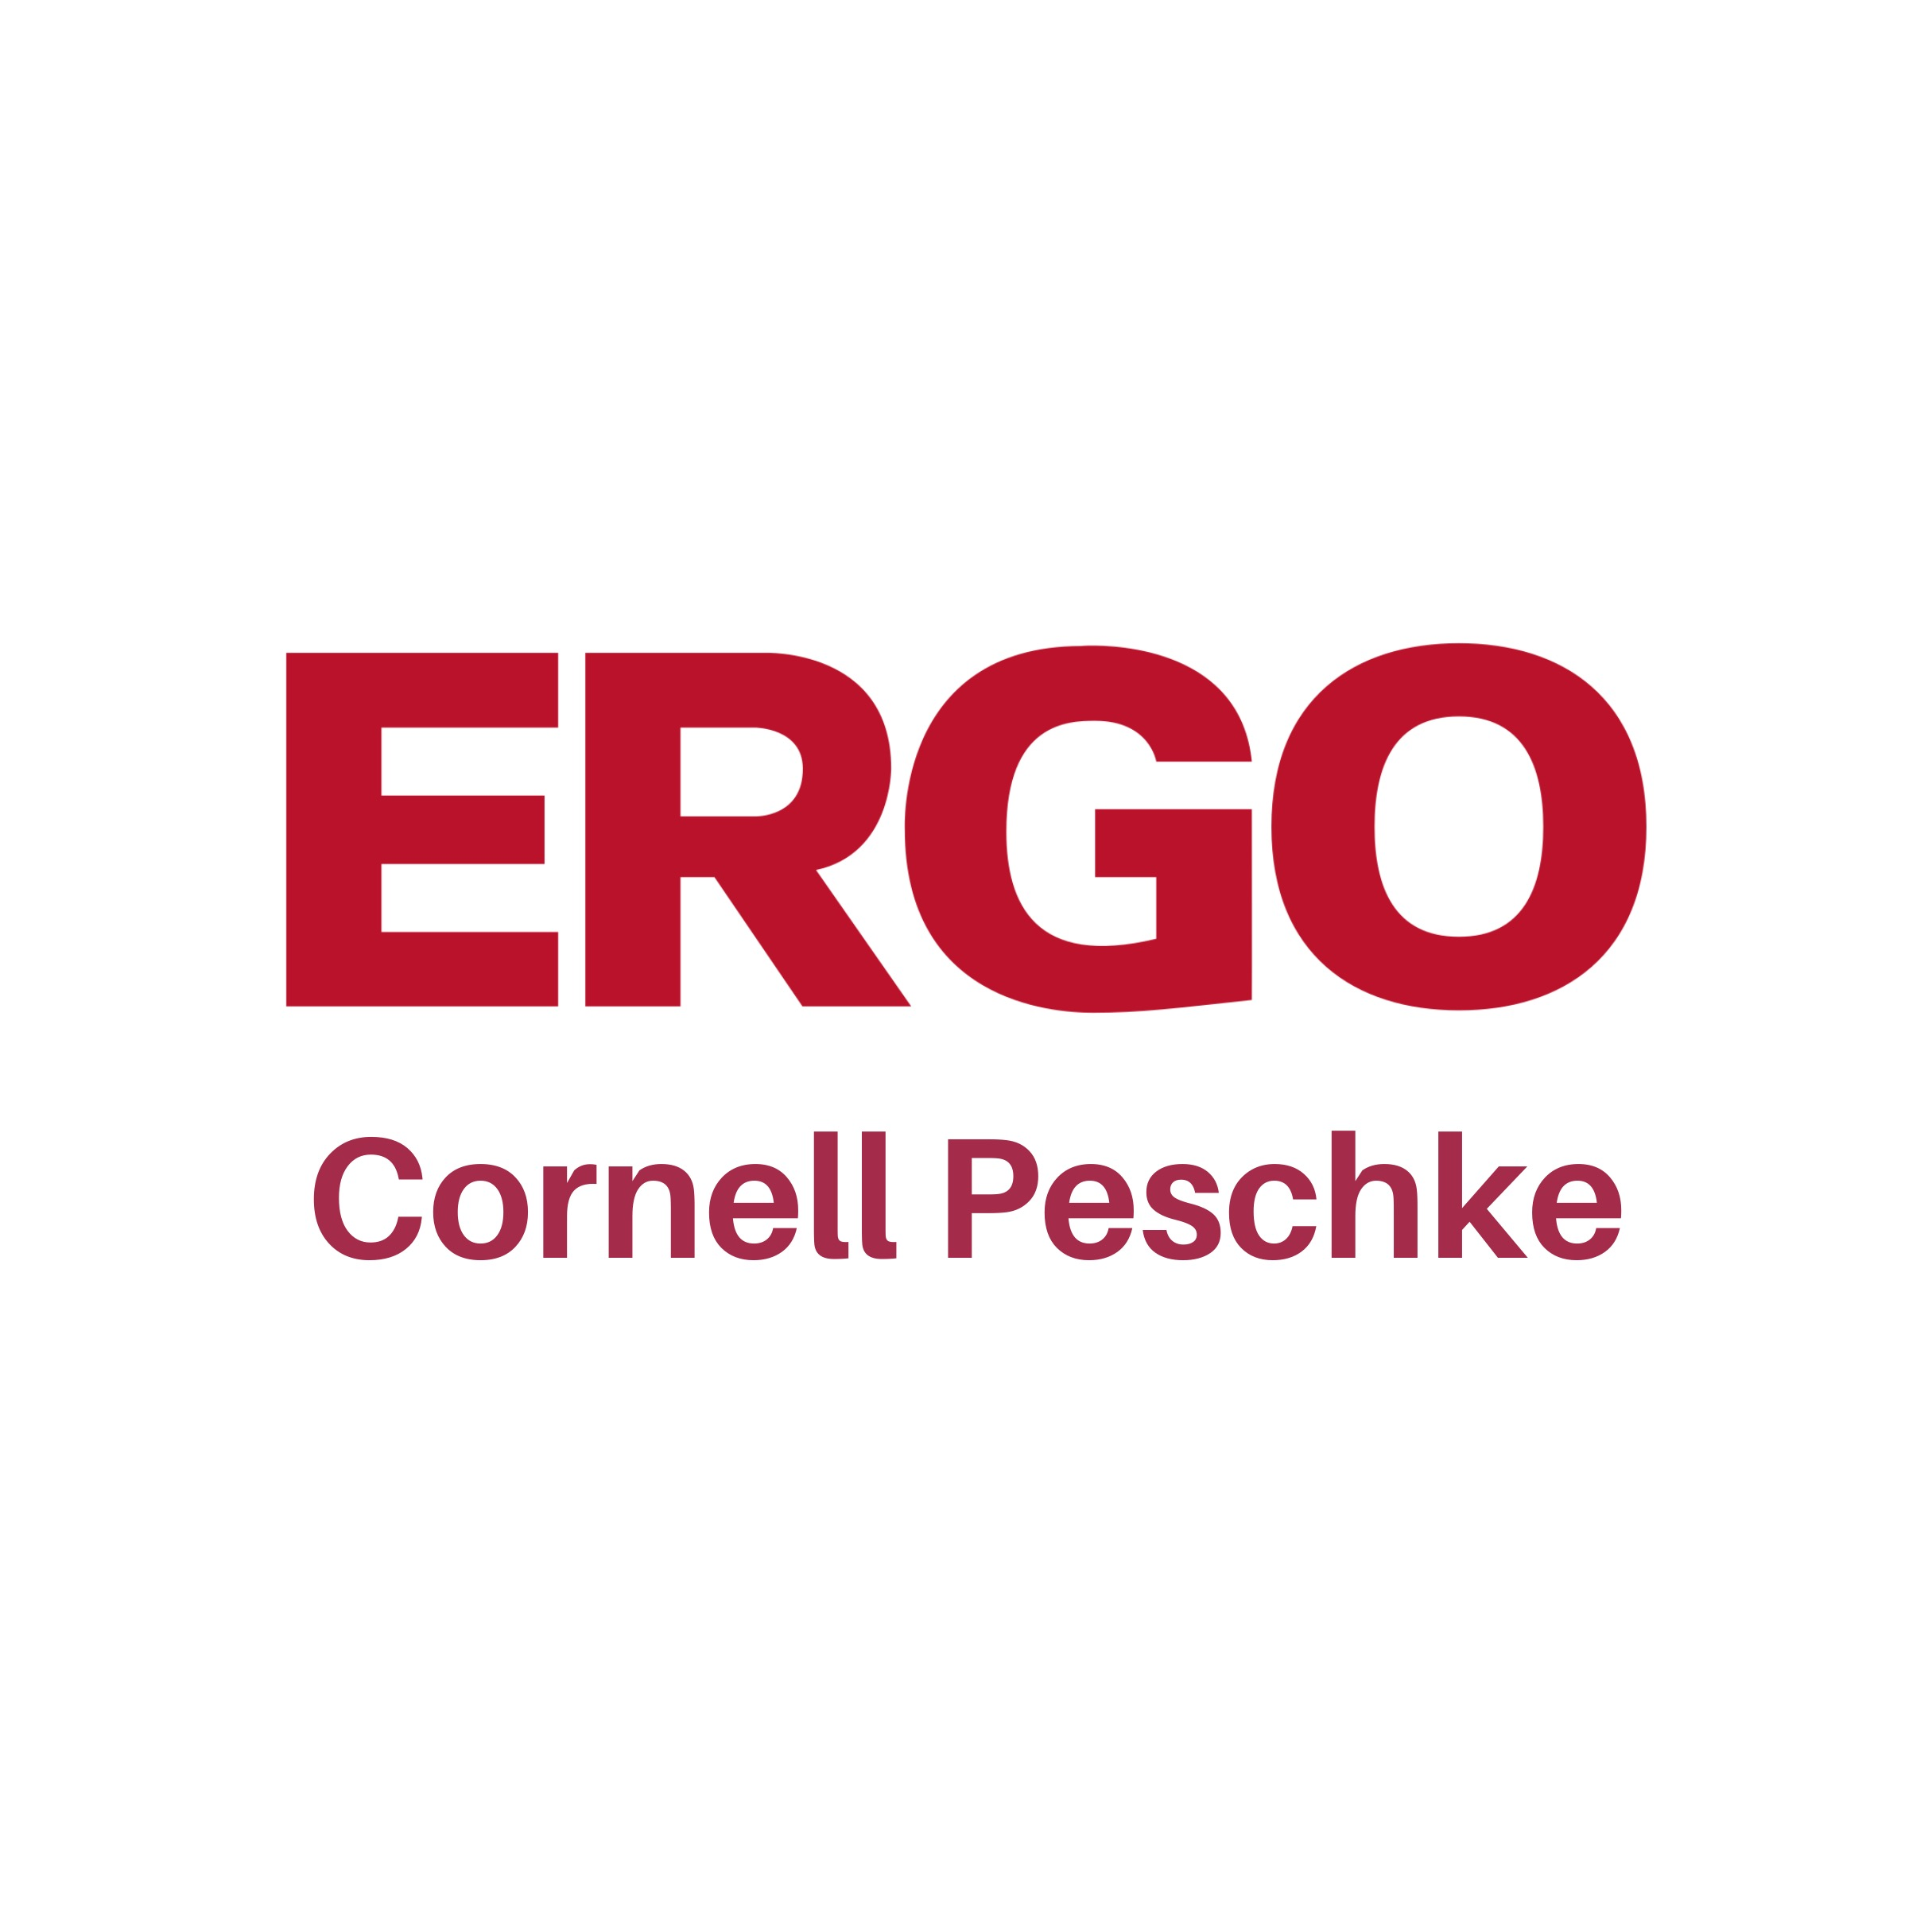 Logo ERGO Cornell Peschke